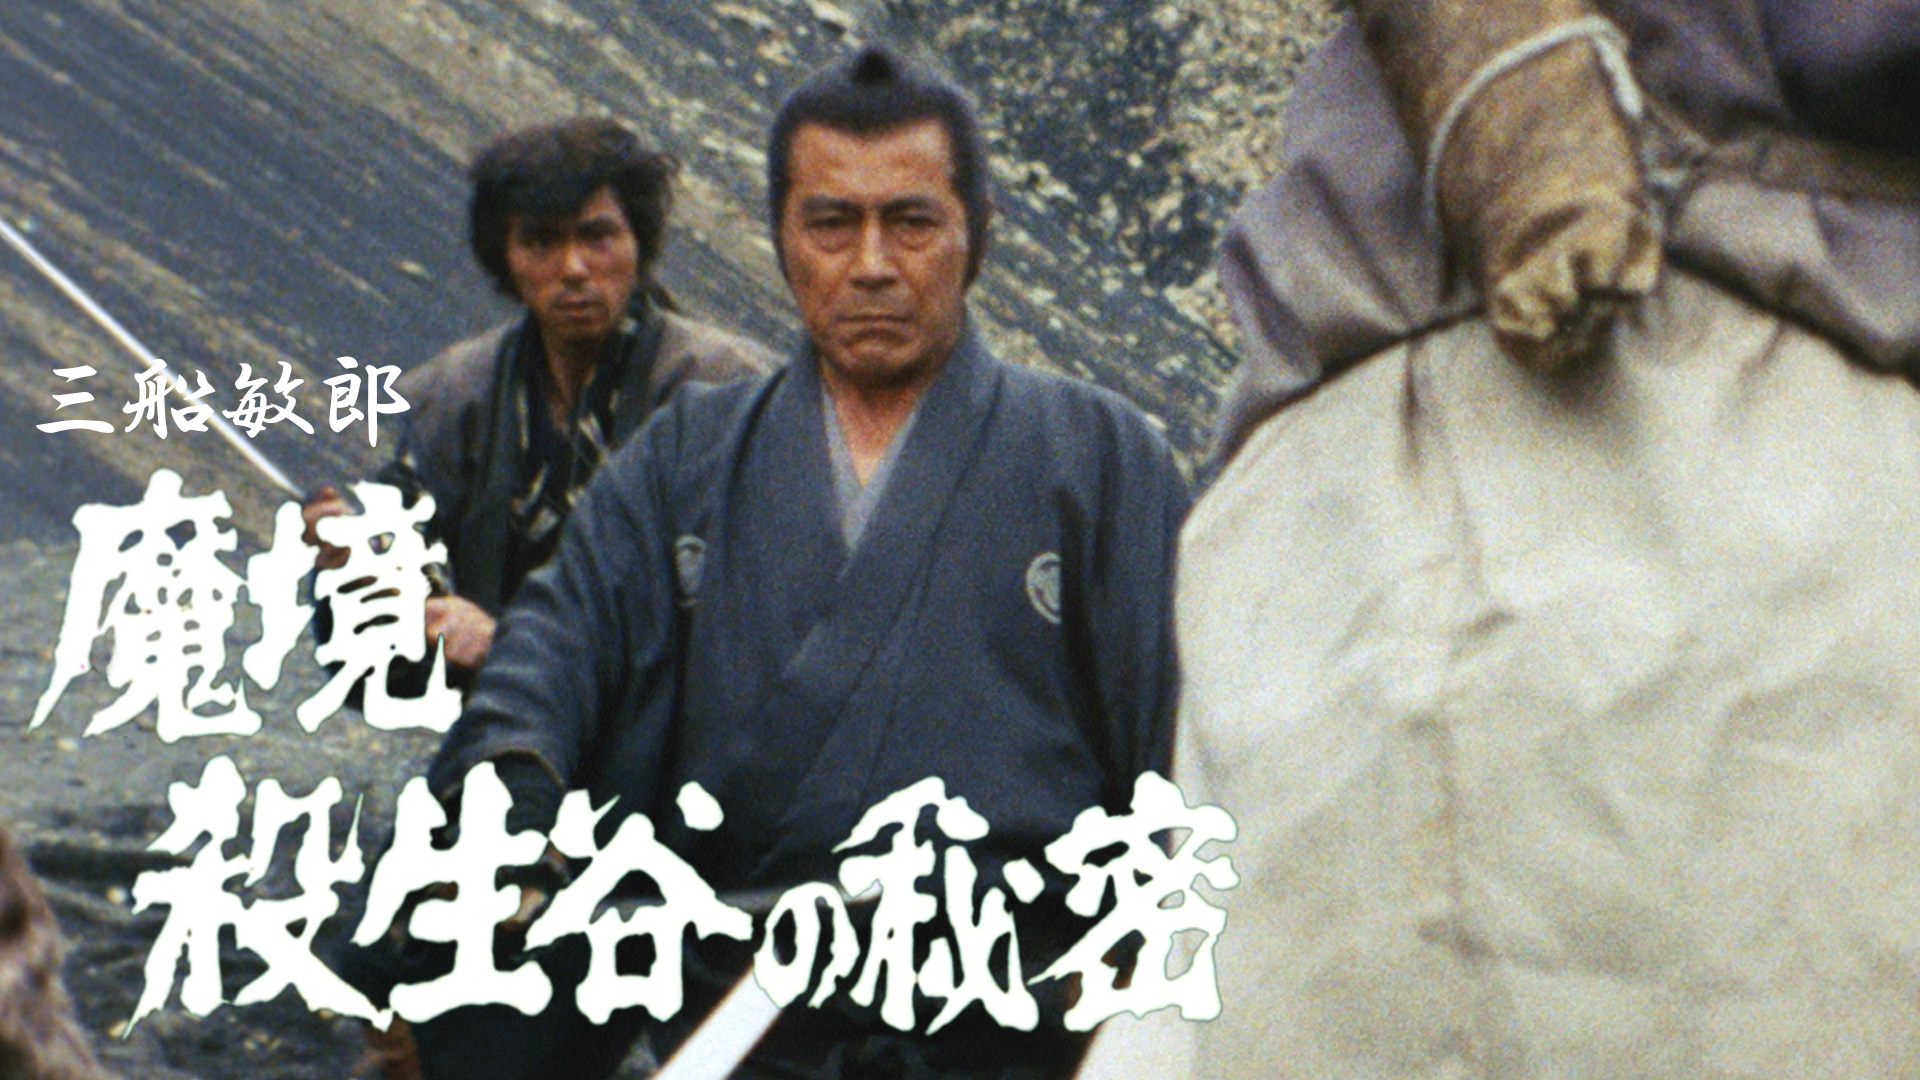 日本時代劇「魔境 殺生谷の秘密」